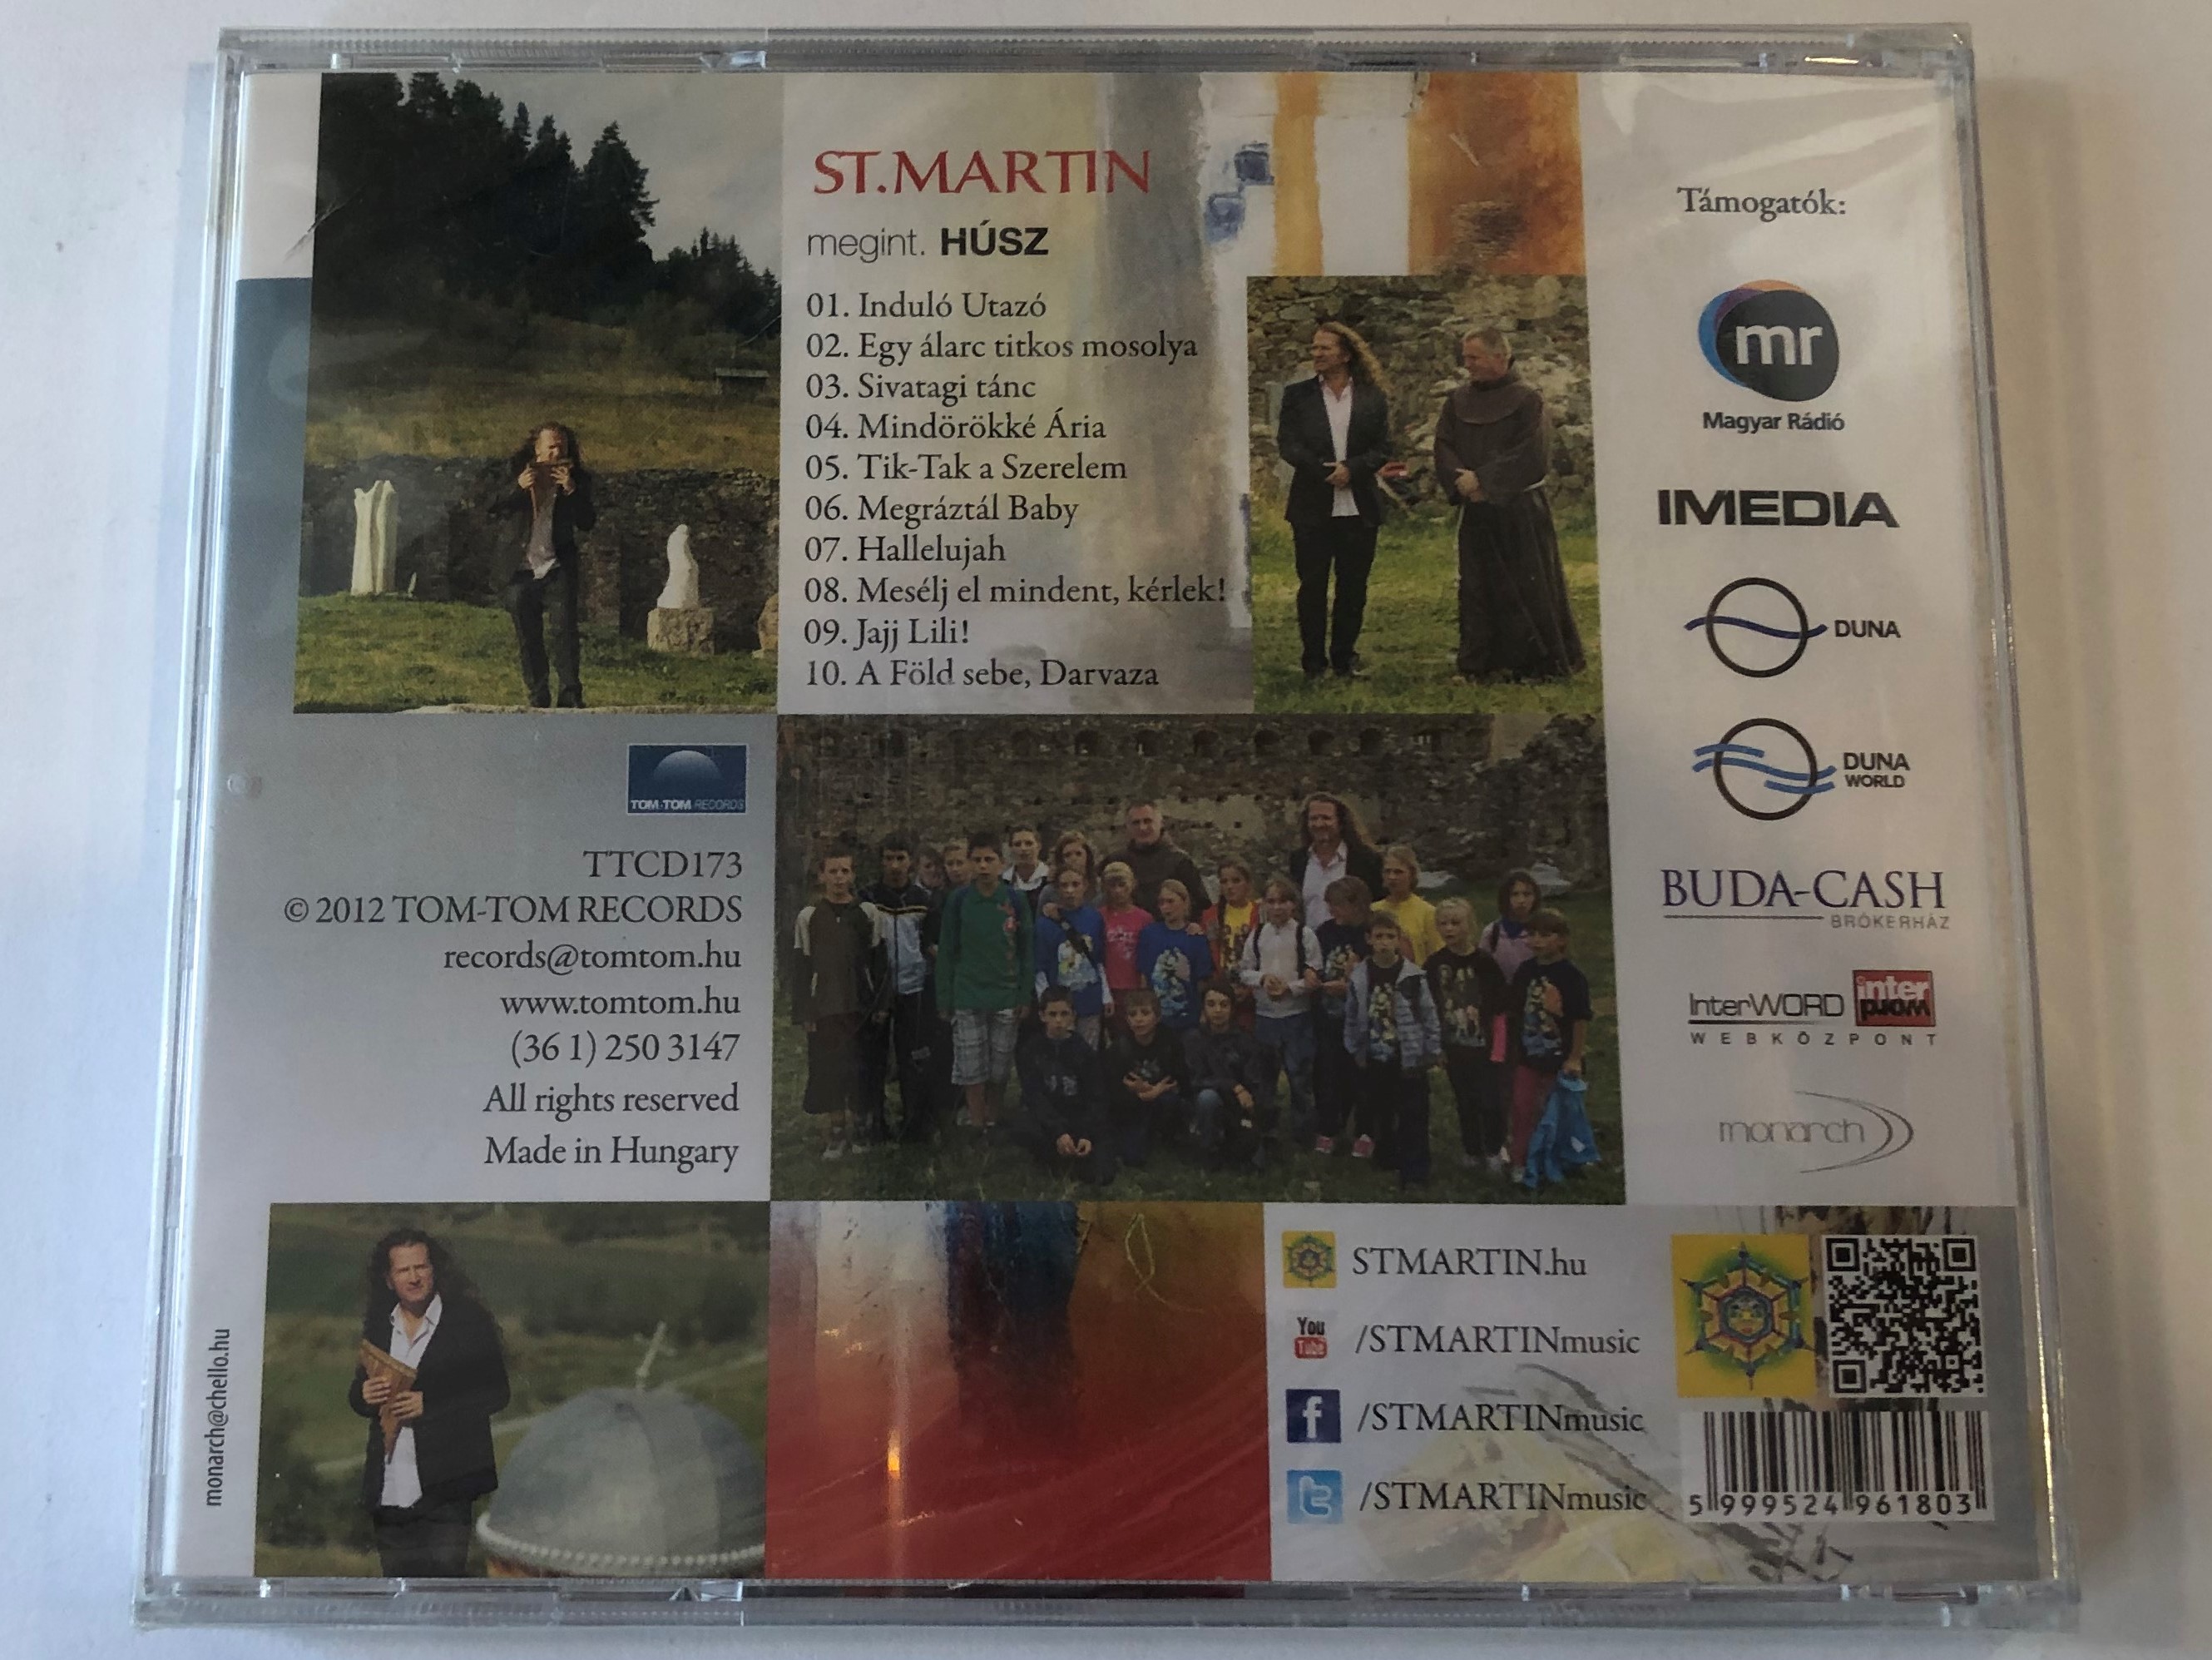 st.-martin-megint.-husz-tom-tom-records-audio-cd-2012-ttcd173-2-.jpg